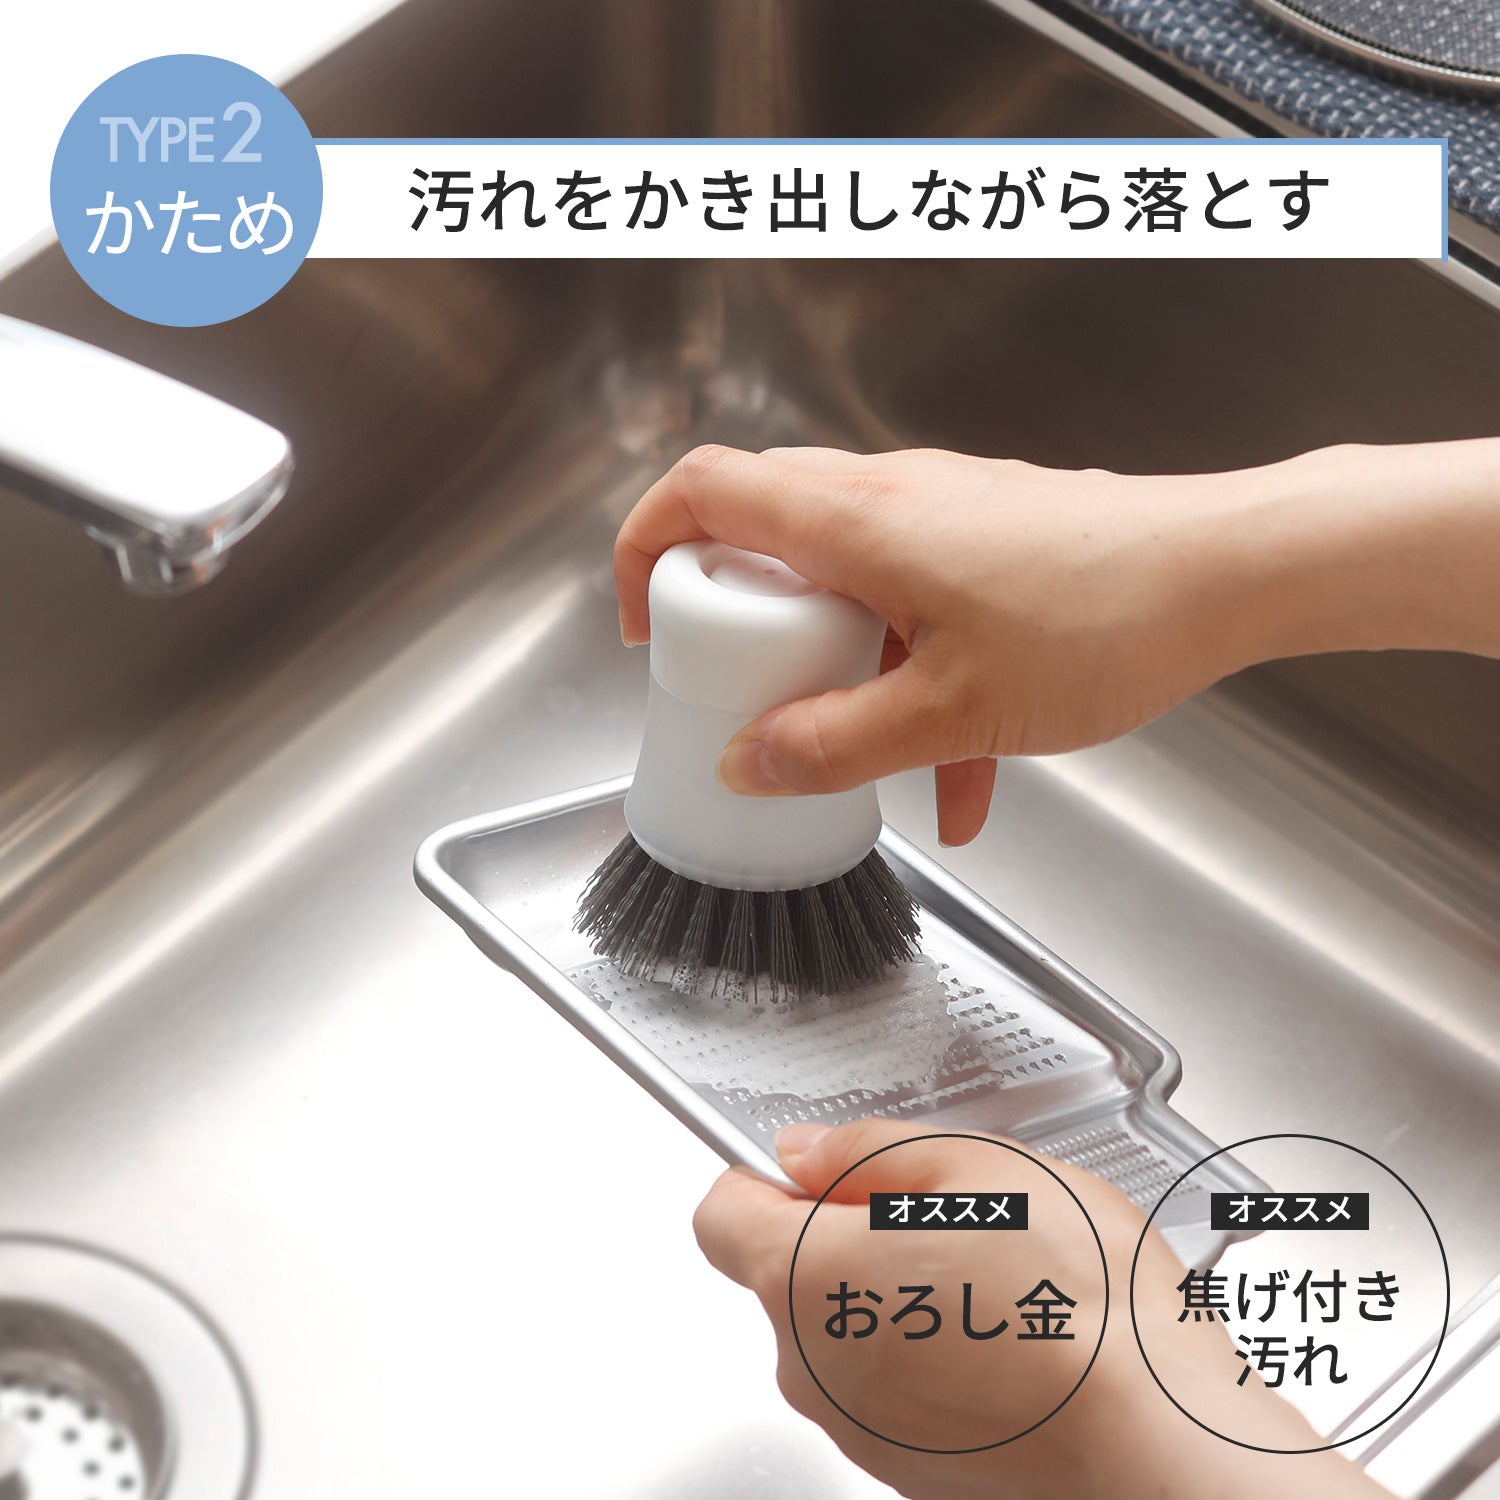 【預購】日本進口 Marna 一鍵式快速清洗廚房清潔刷 - Cnjpkitchen ❤️ 🇯🇵日本廚具 家居生活雜貨店